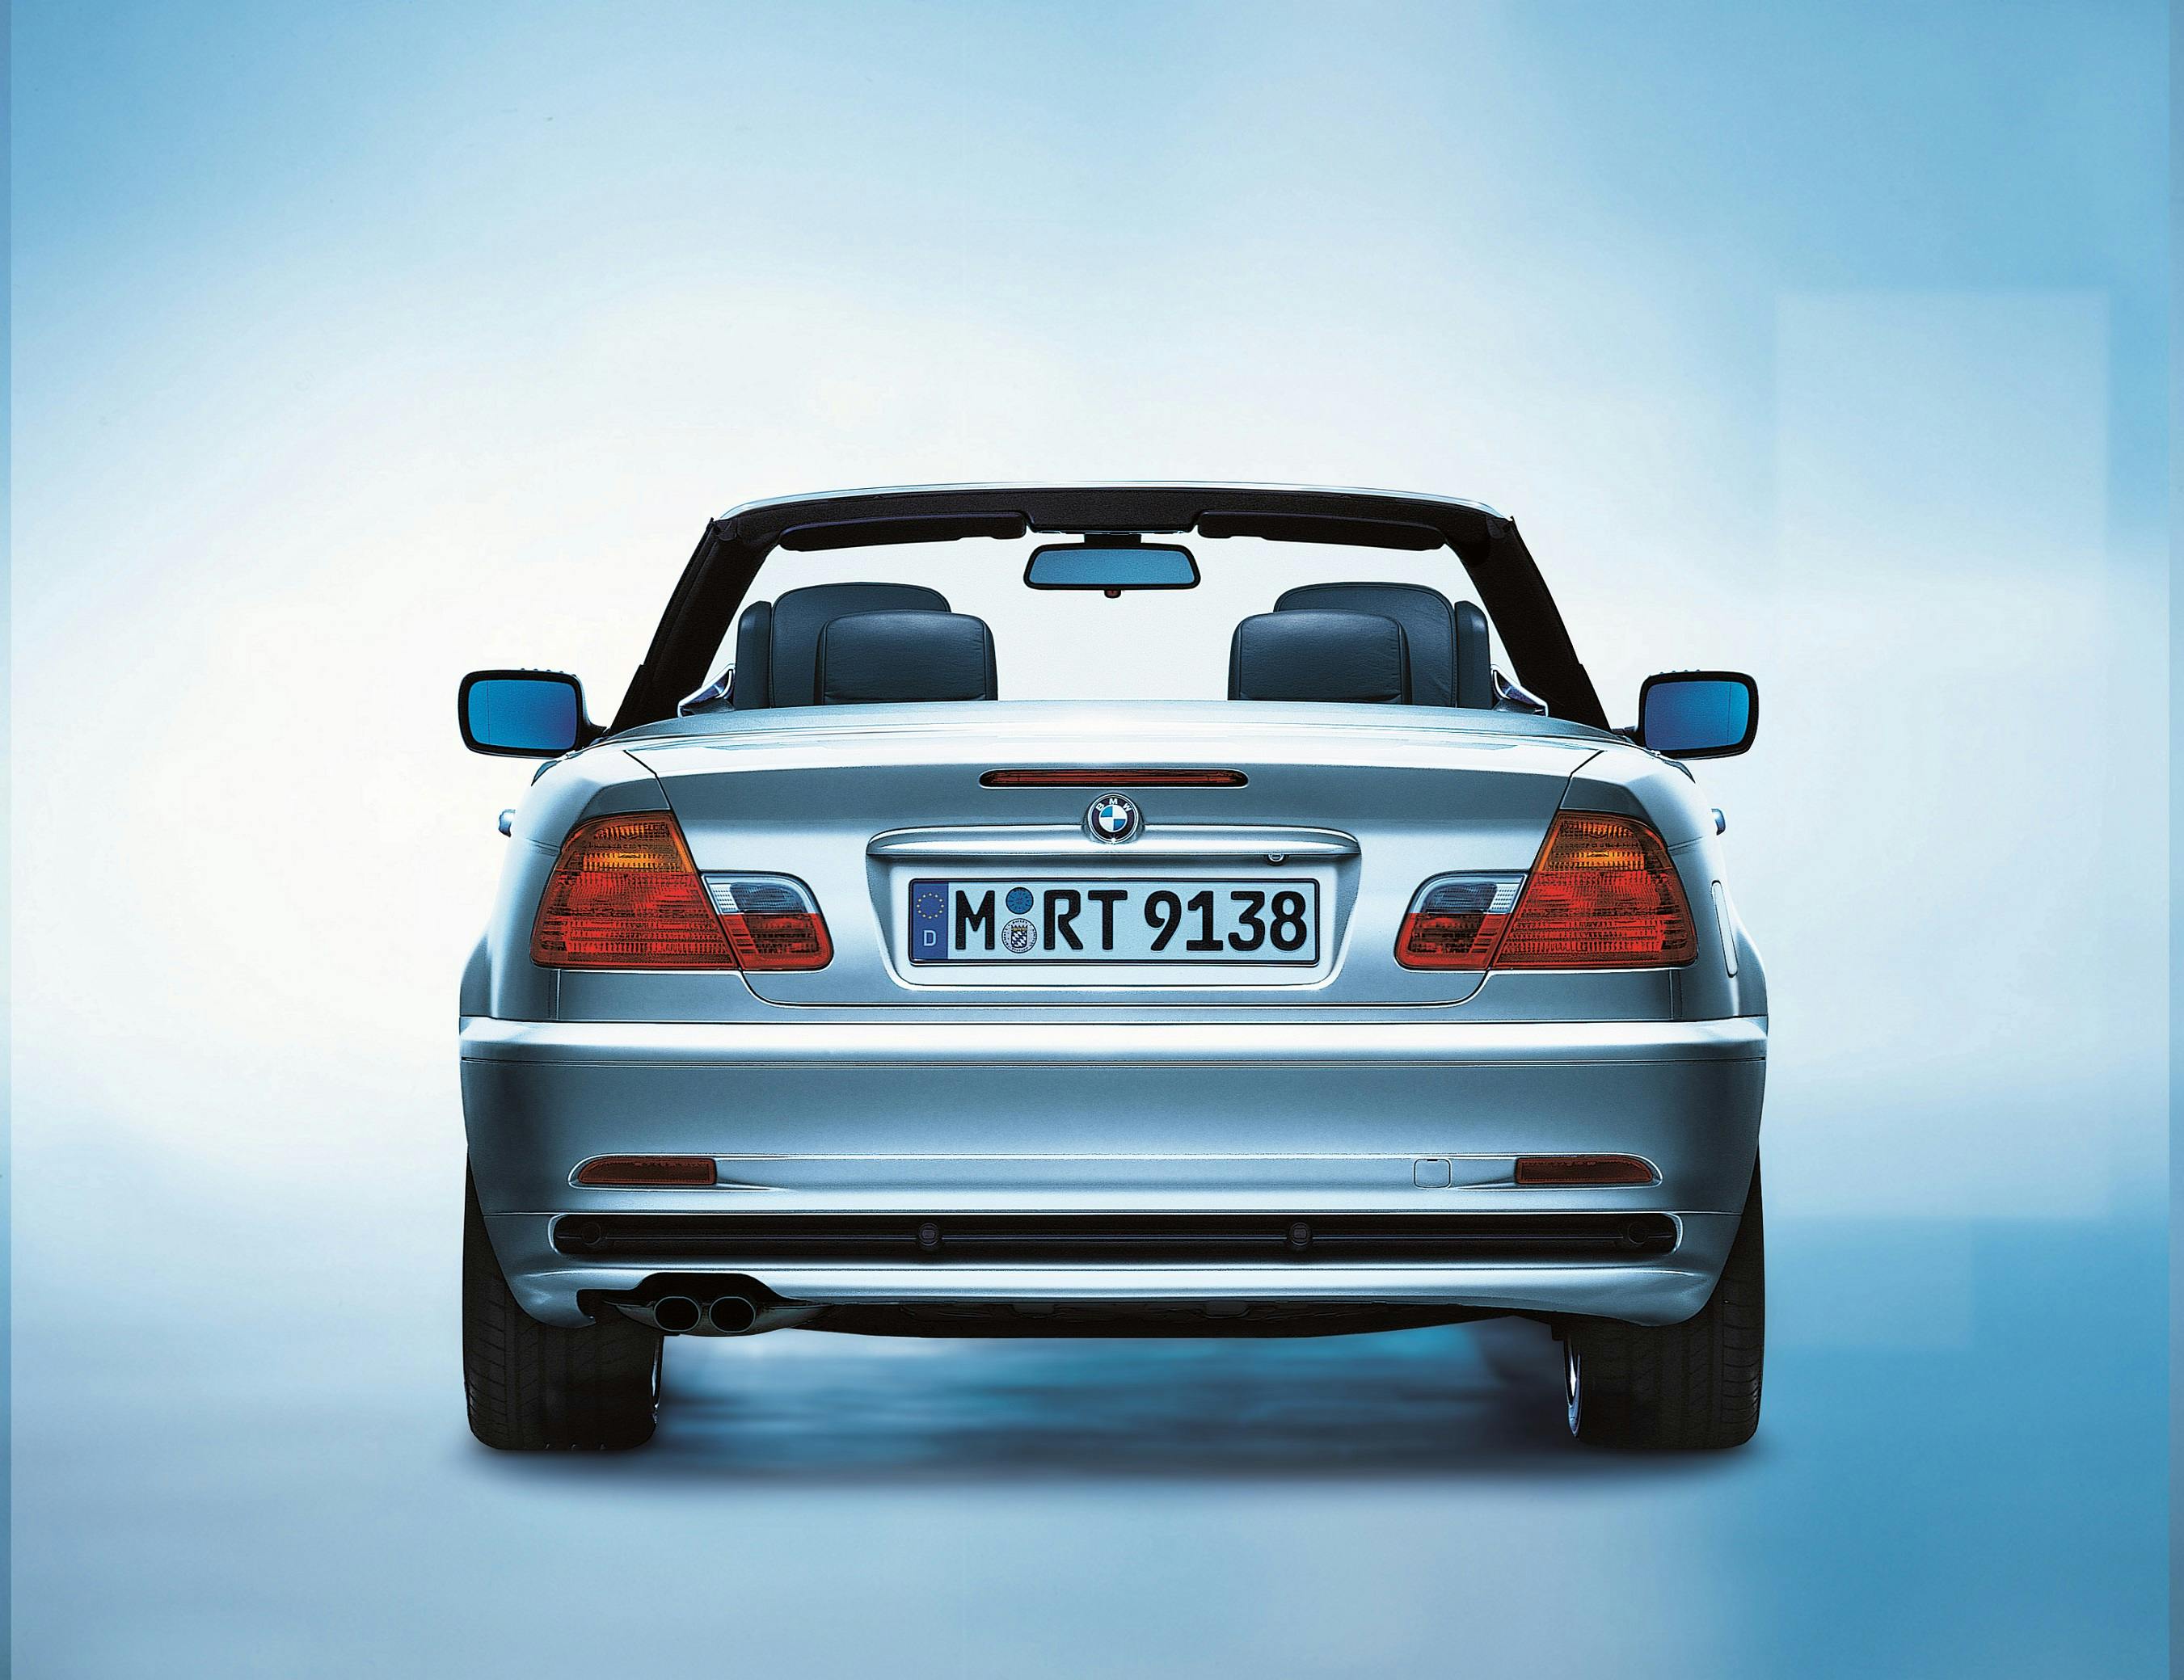 BMW 3er Cabriolet (E46) seit 2000